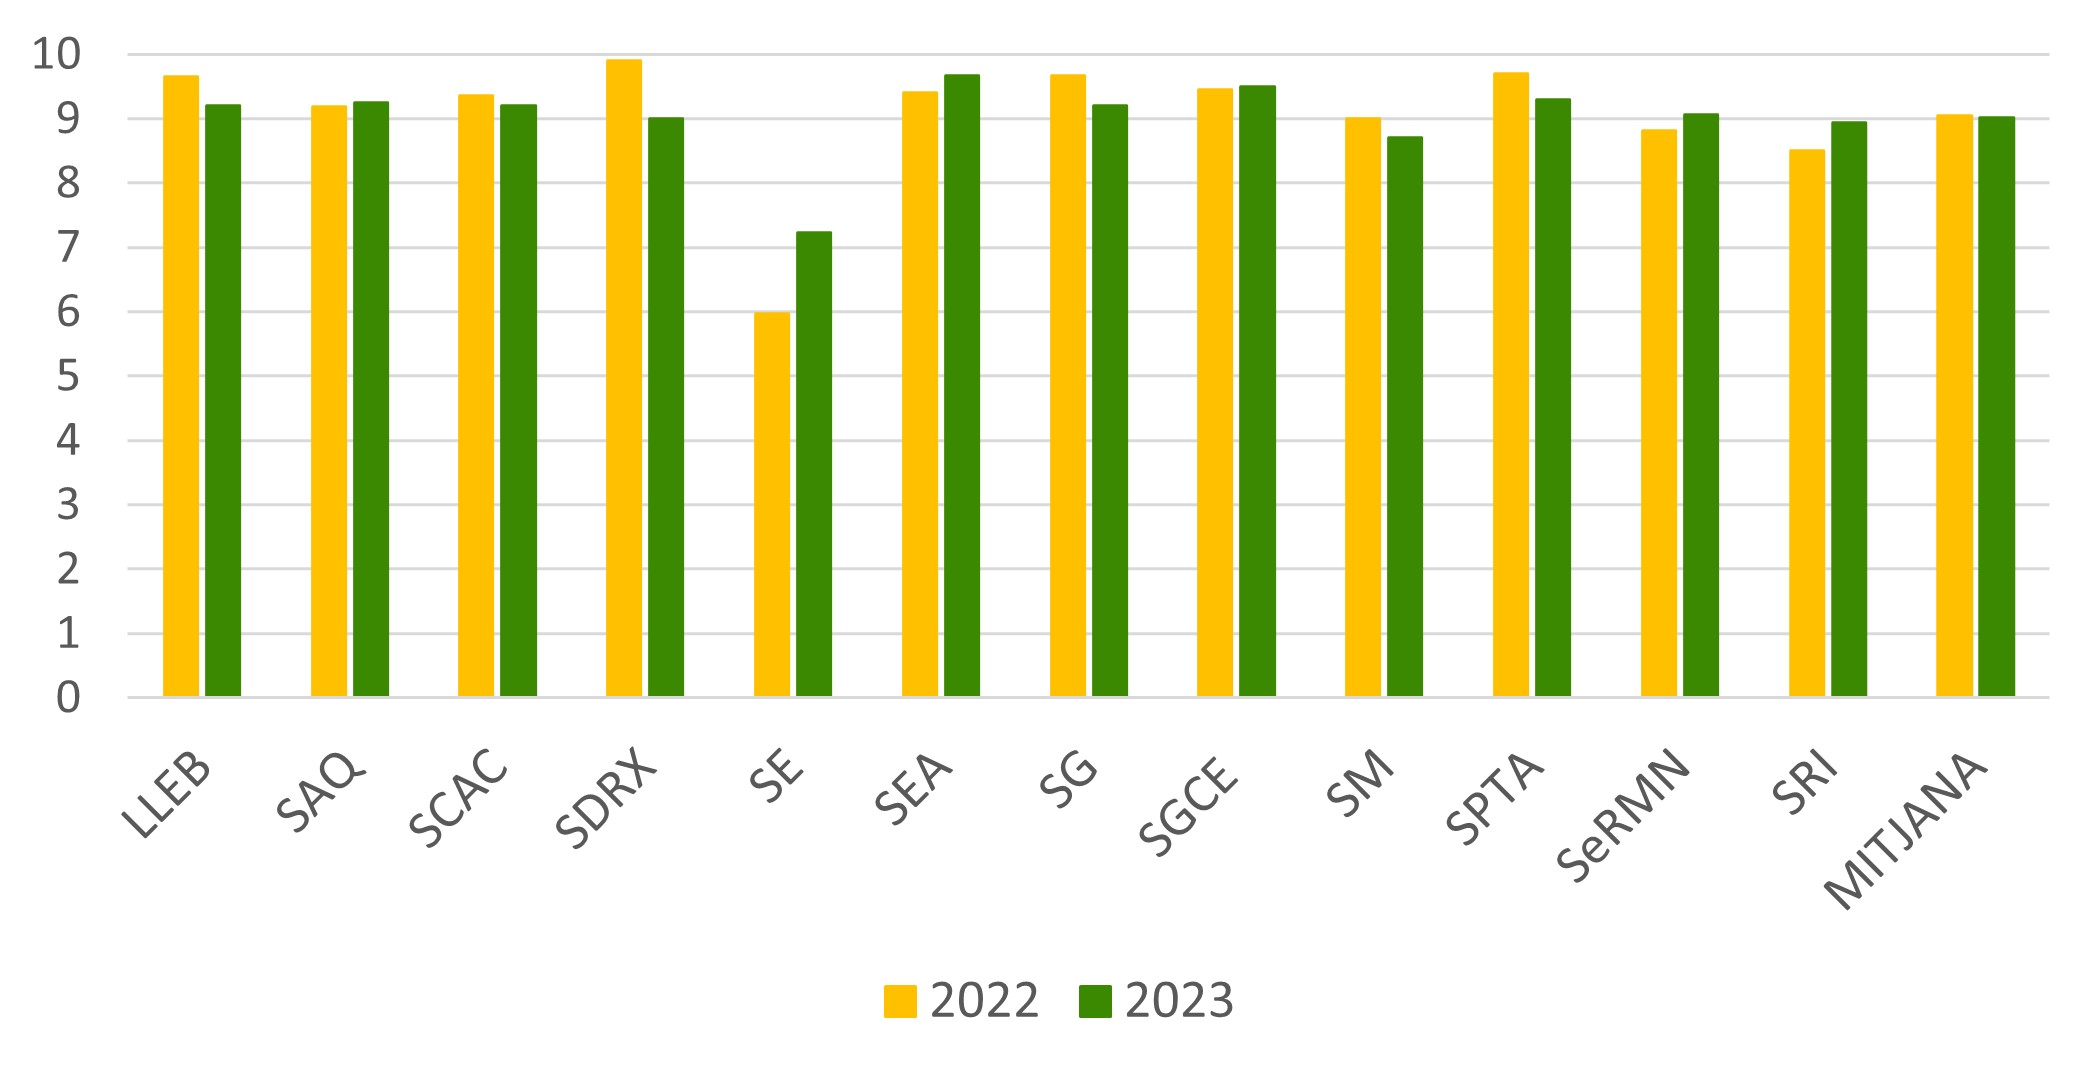 Gràfic comparatiu de la valoració del 2023 respecte el 2022